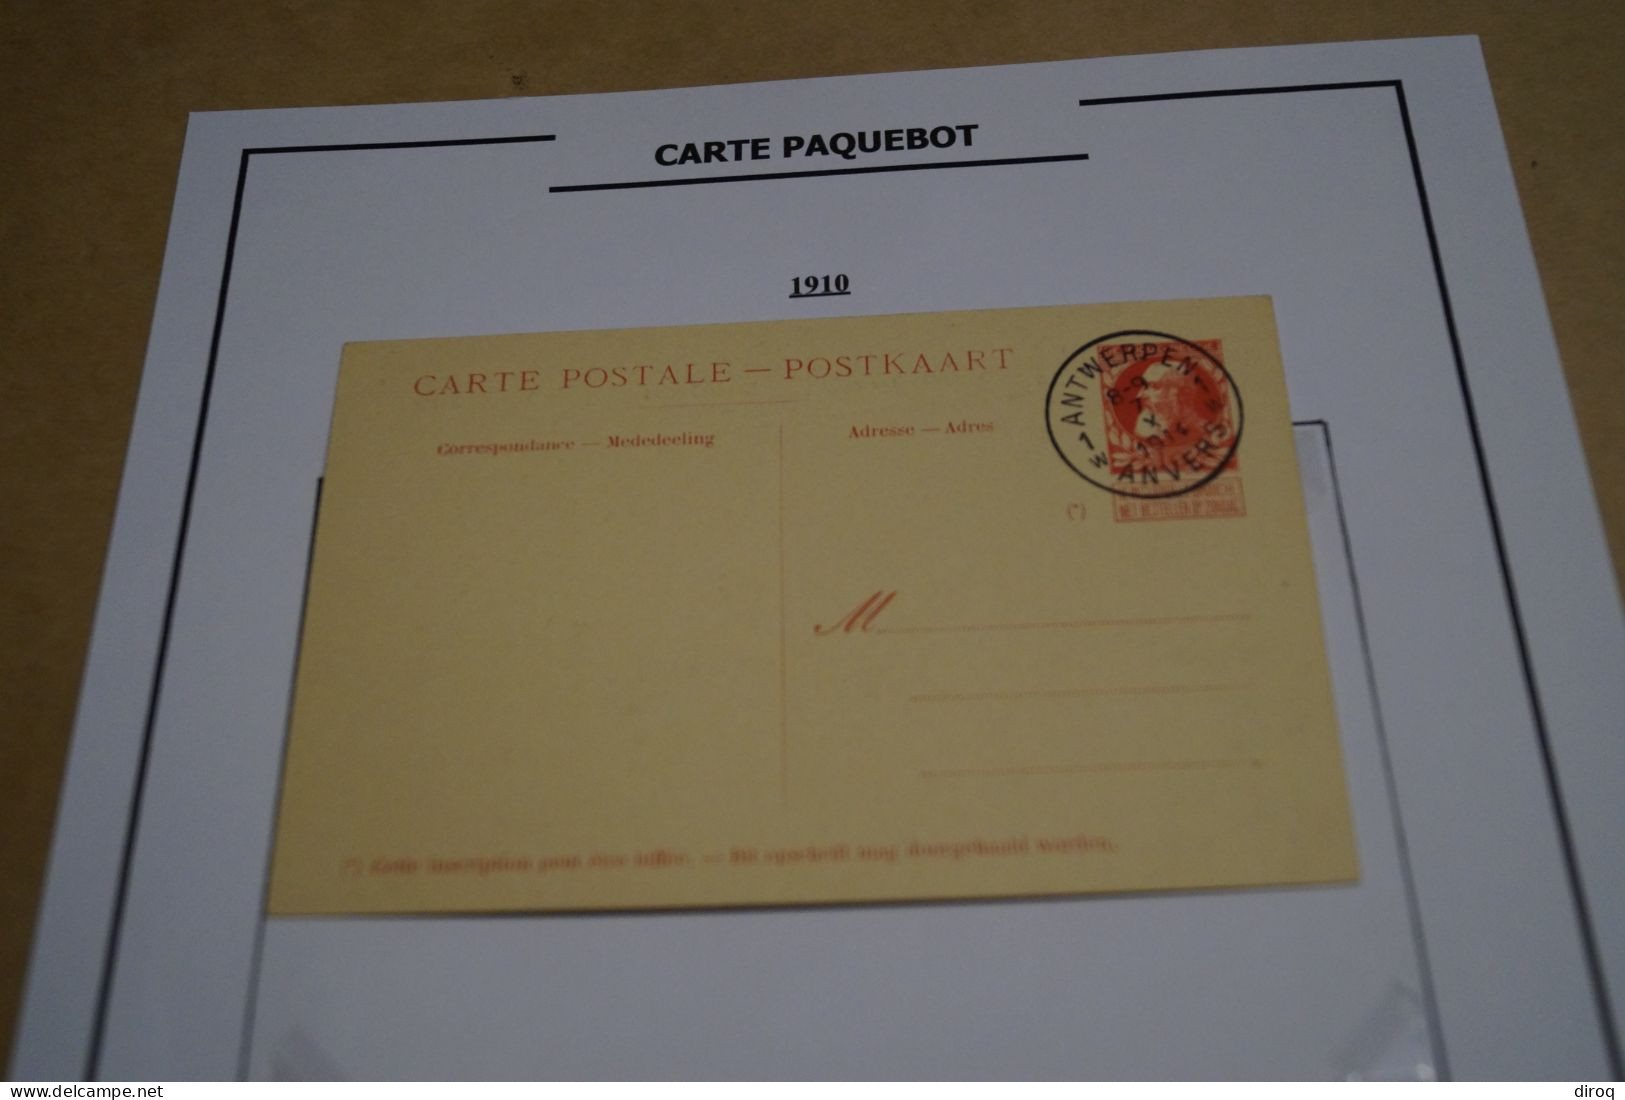 Carte Paquebot 1910, Le Jan Breydel,timbre Oblitéré 10 C. Rouge,grosse Barbe ,état Neuf Pour Collection - Paquebots